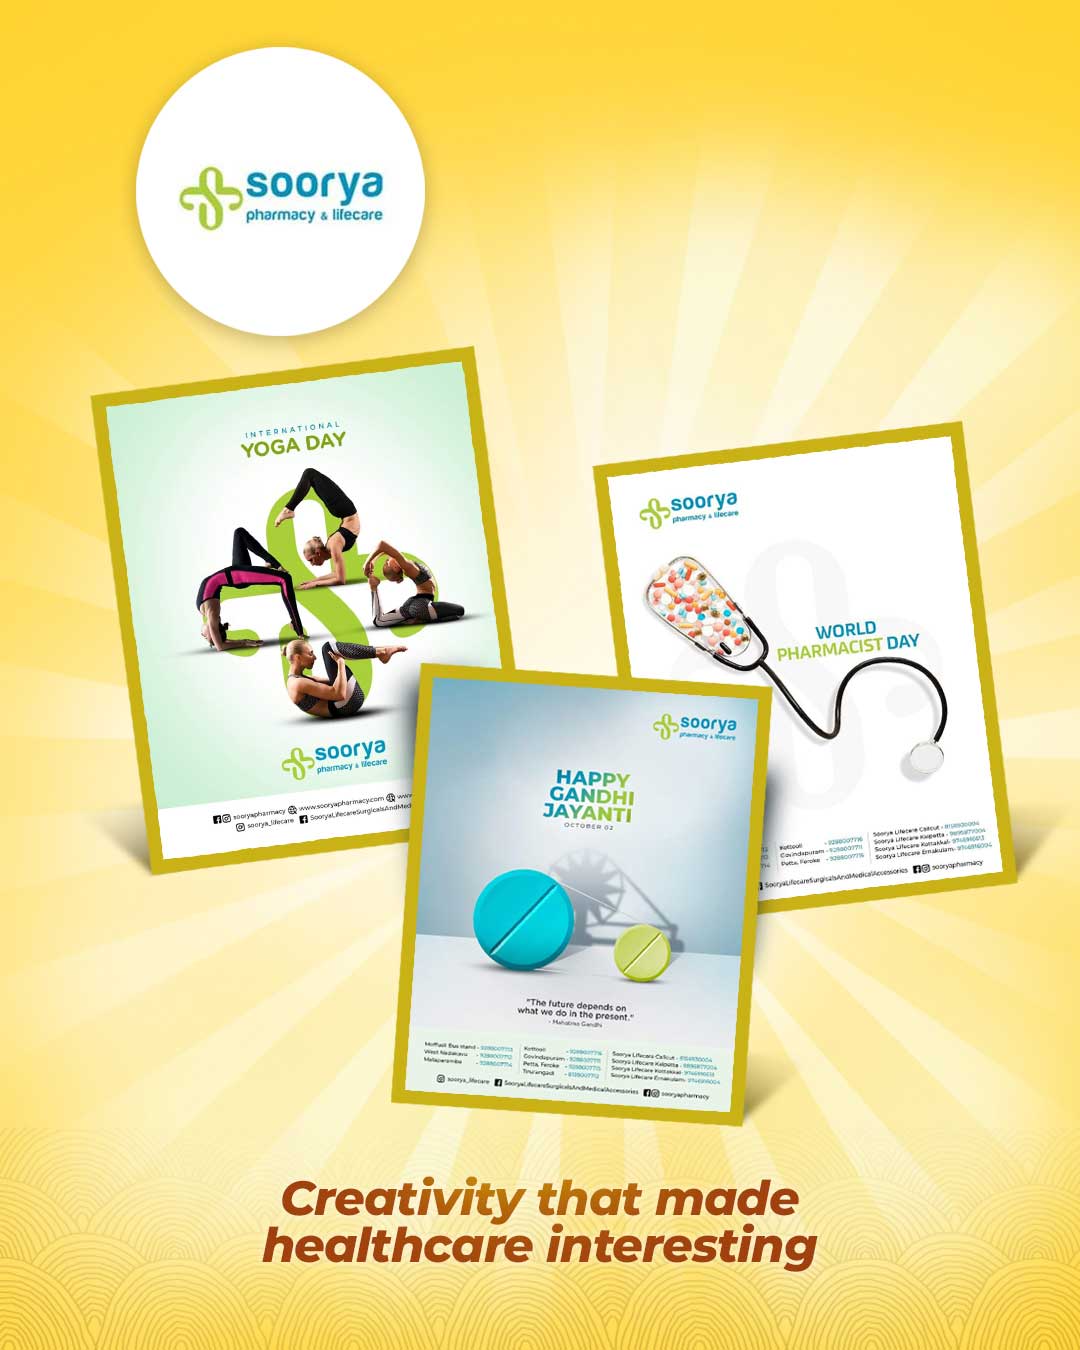 soorya-pharmacy